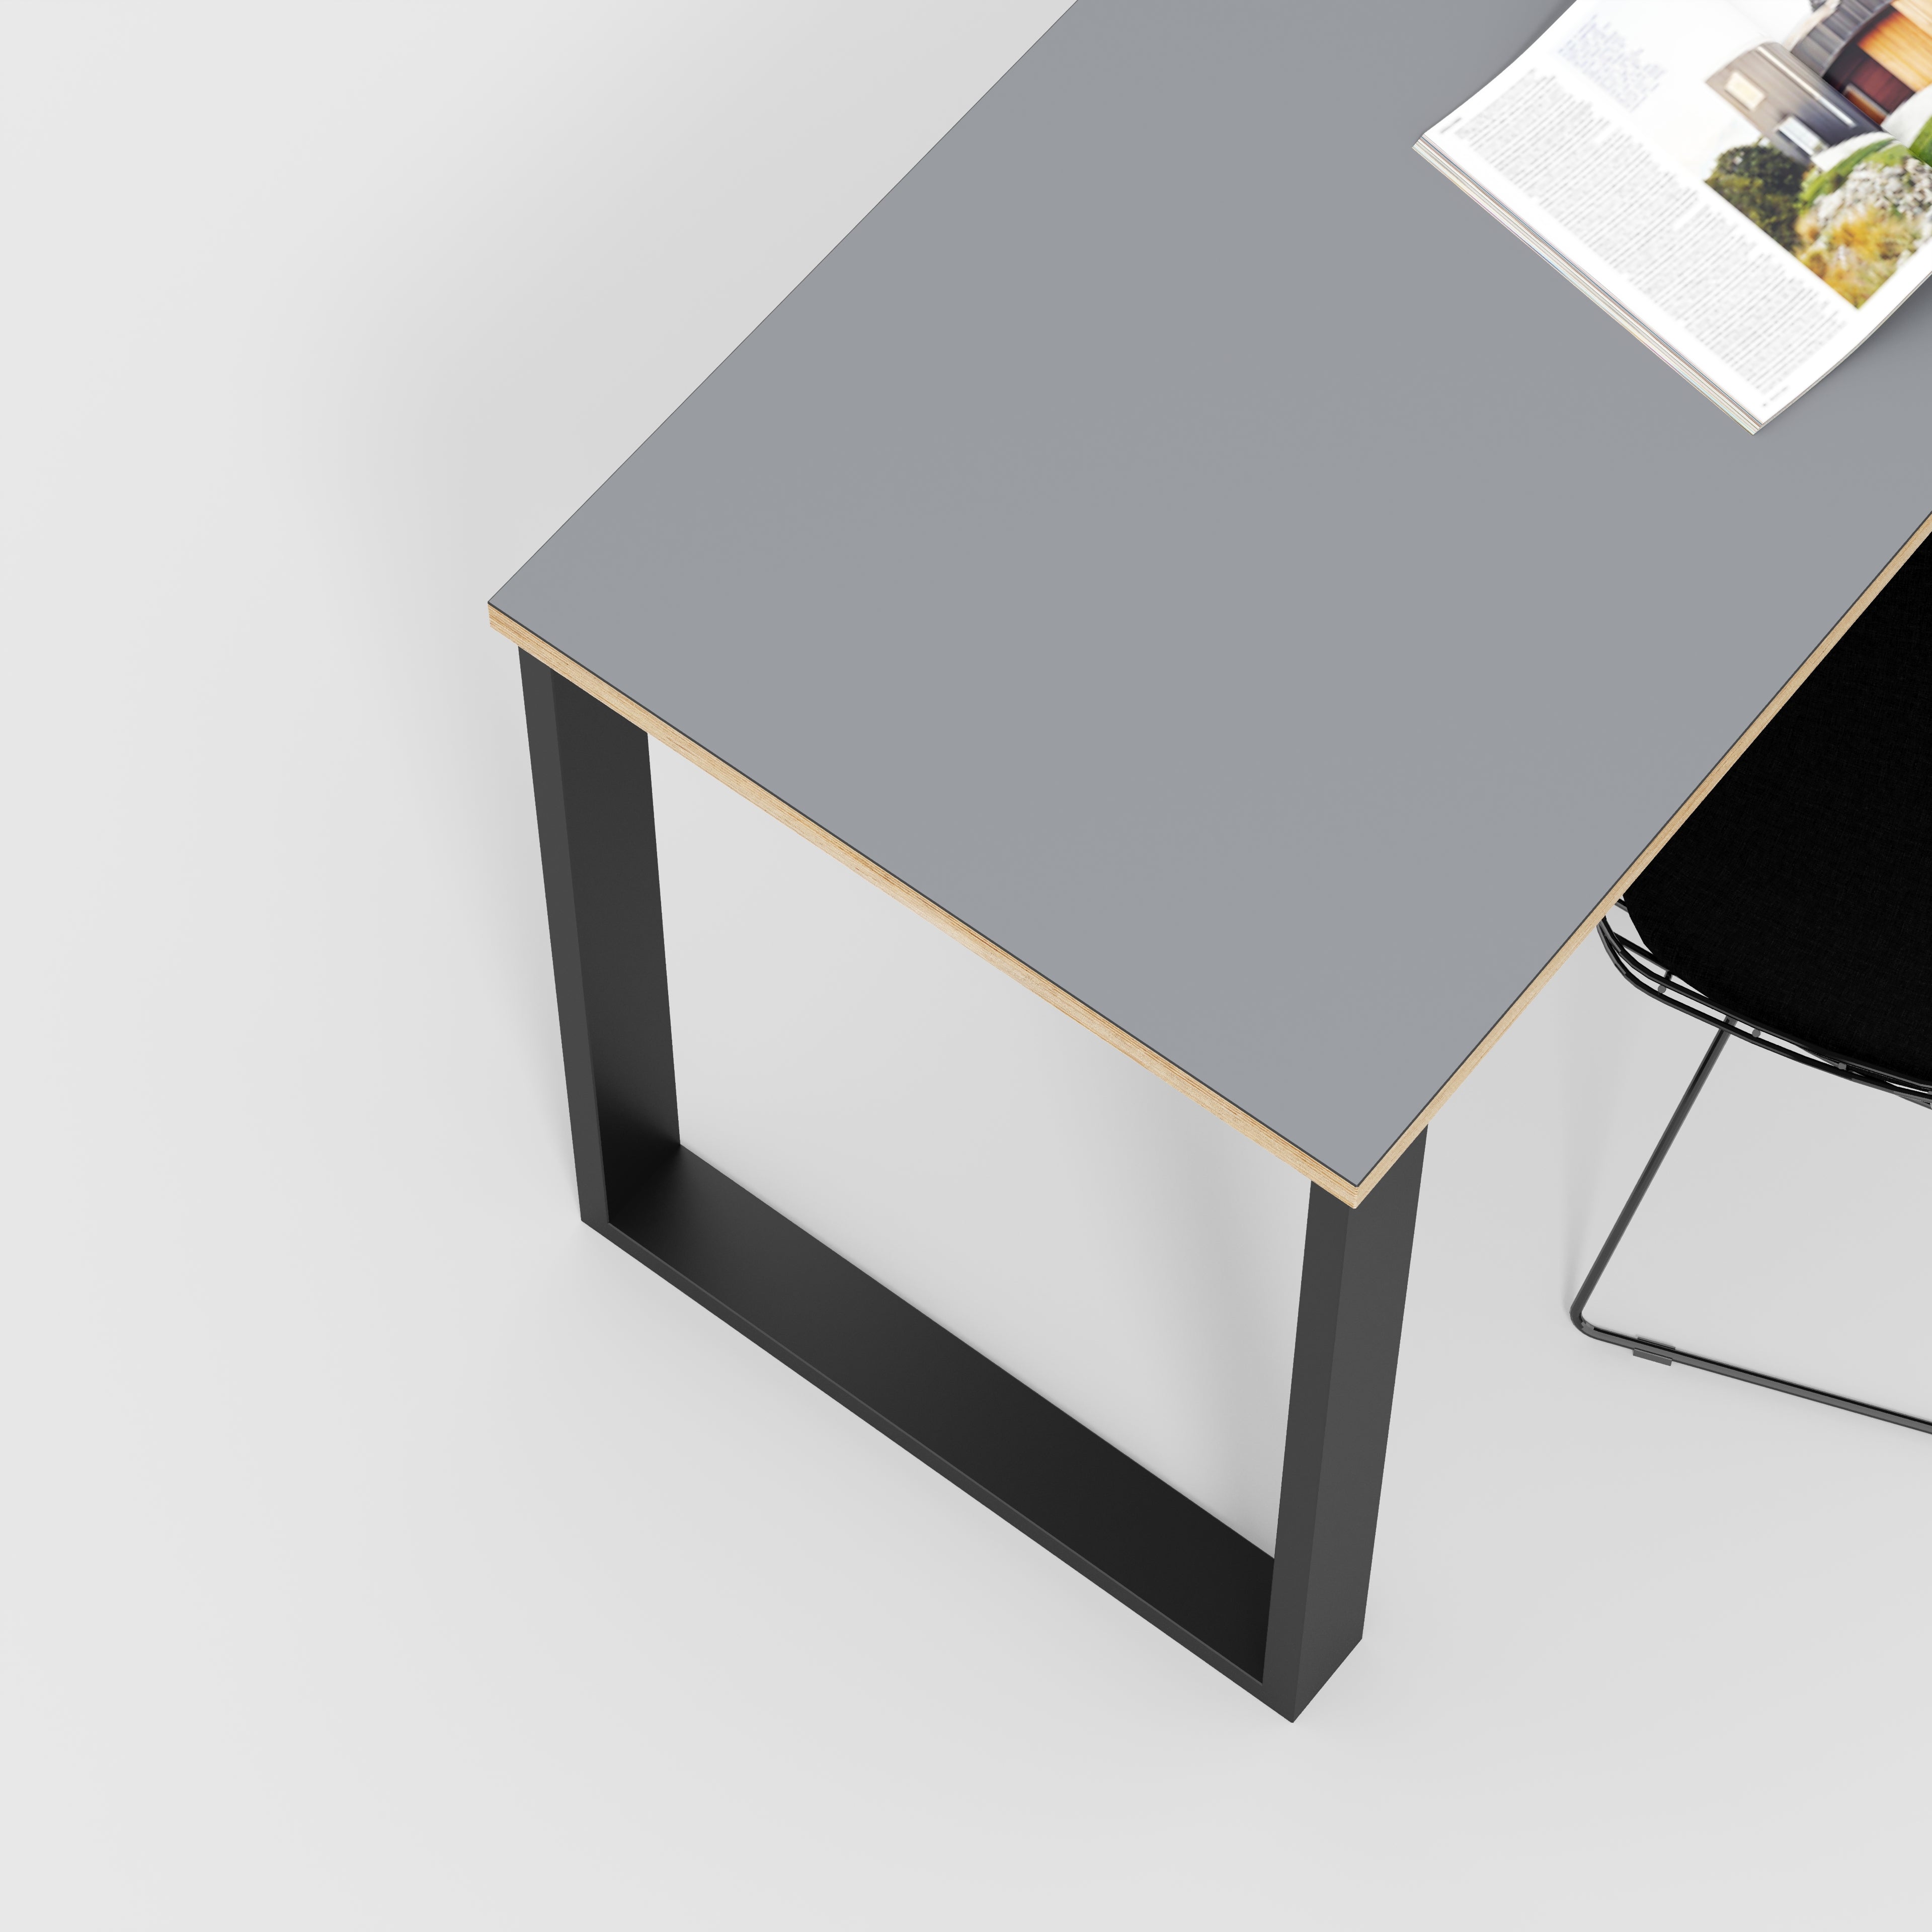 Desk with Black Industrial Legs - Formica Tornado Grey - 1200(w) x 600(d) x 735(h)